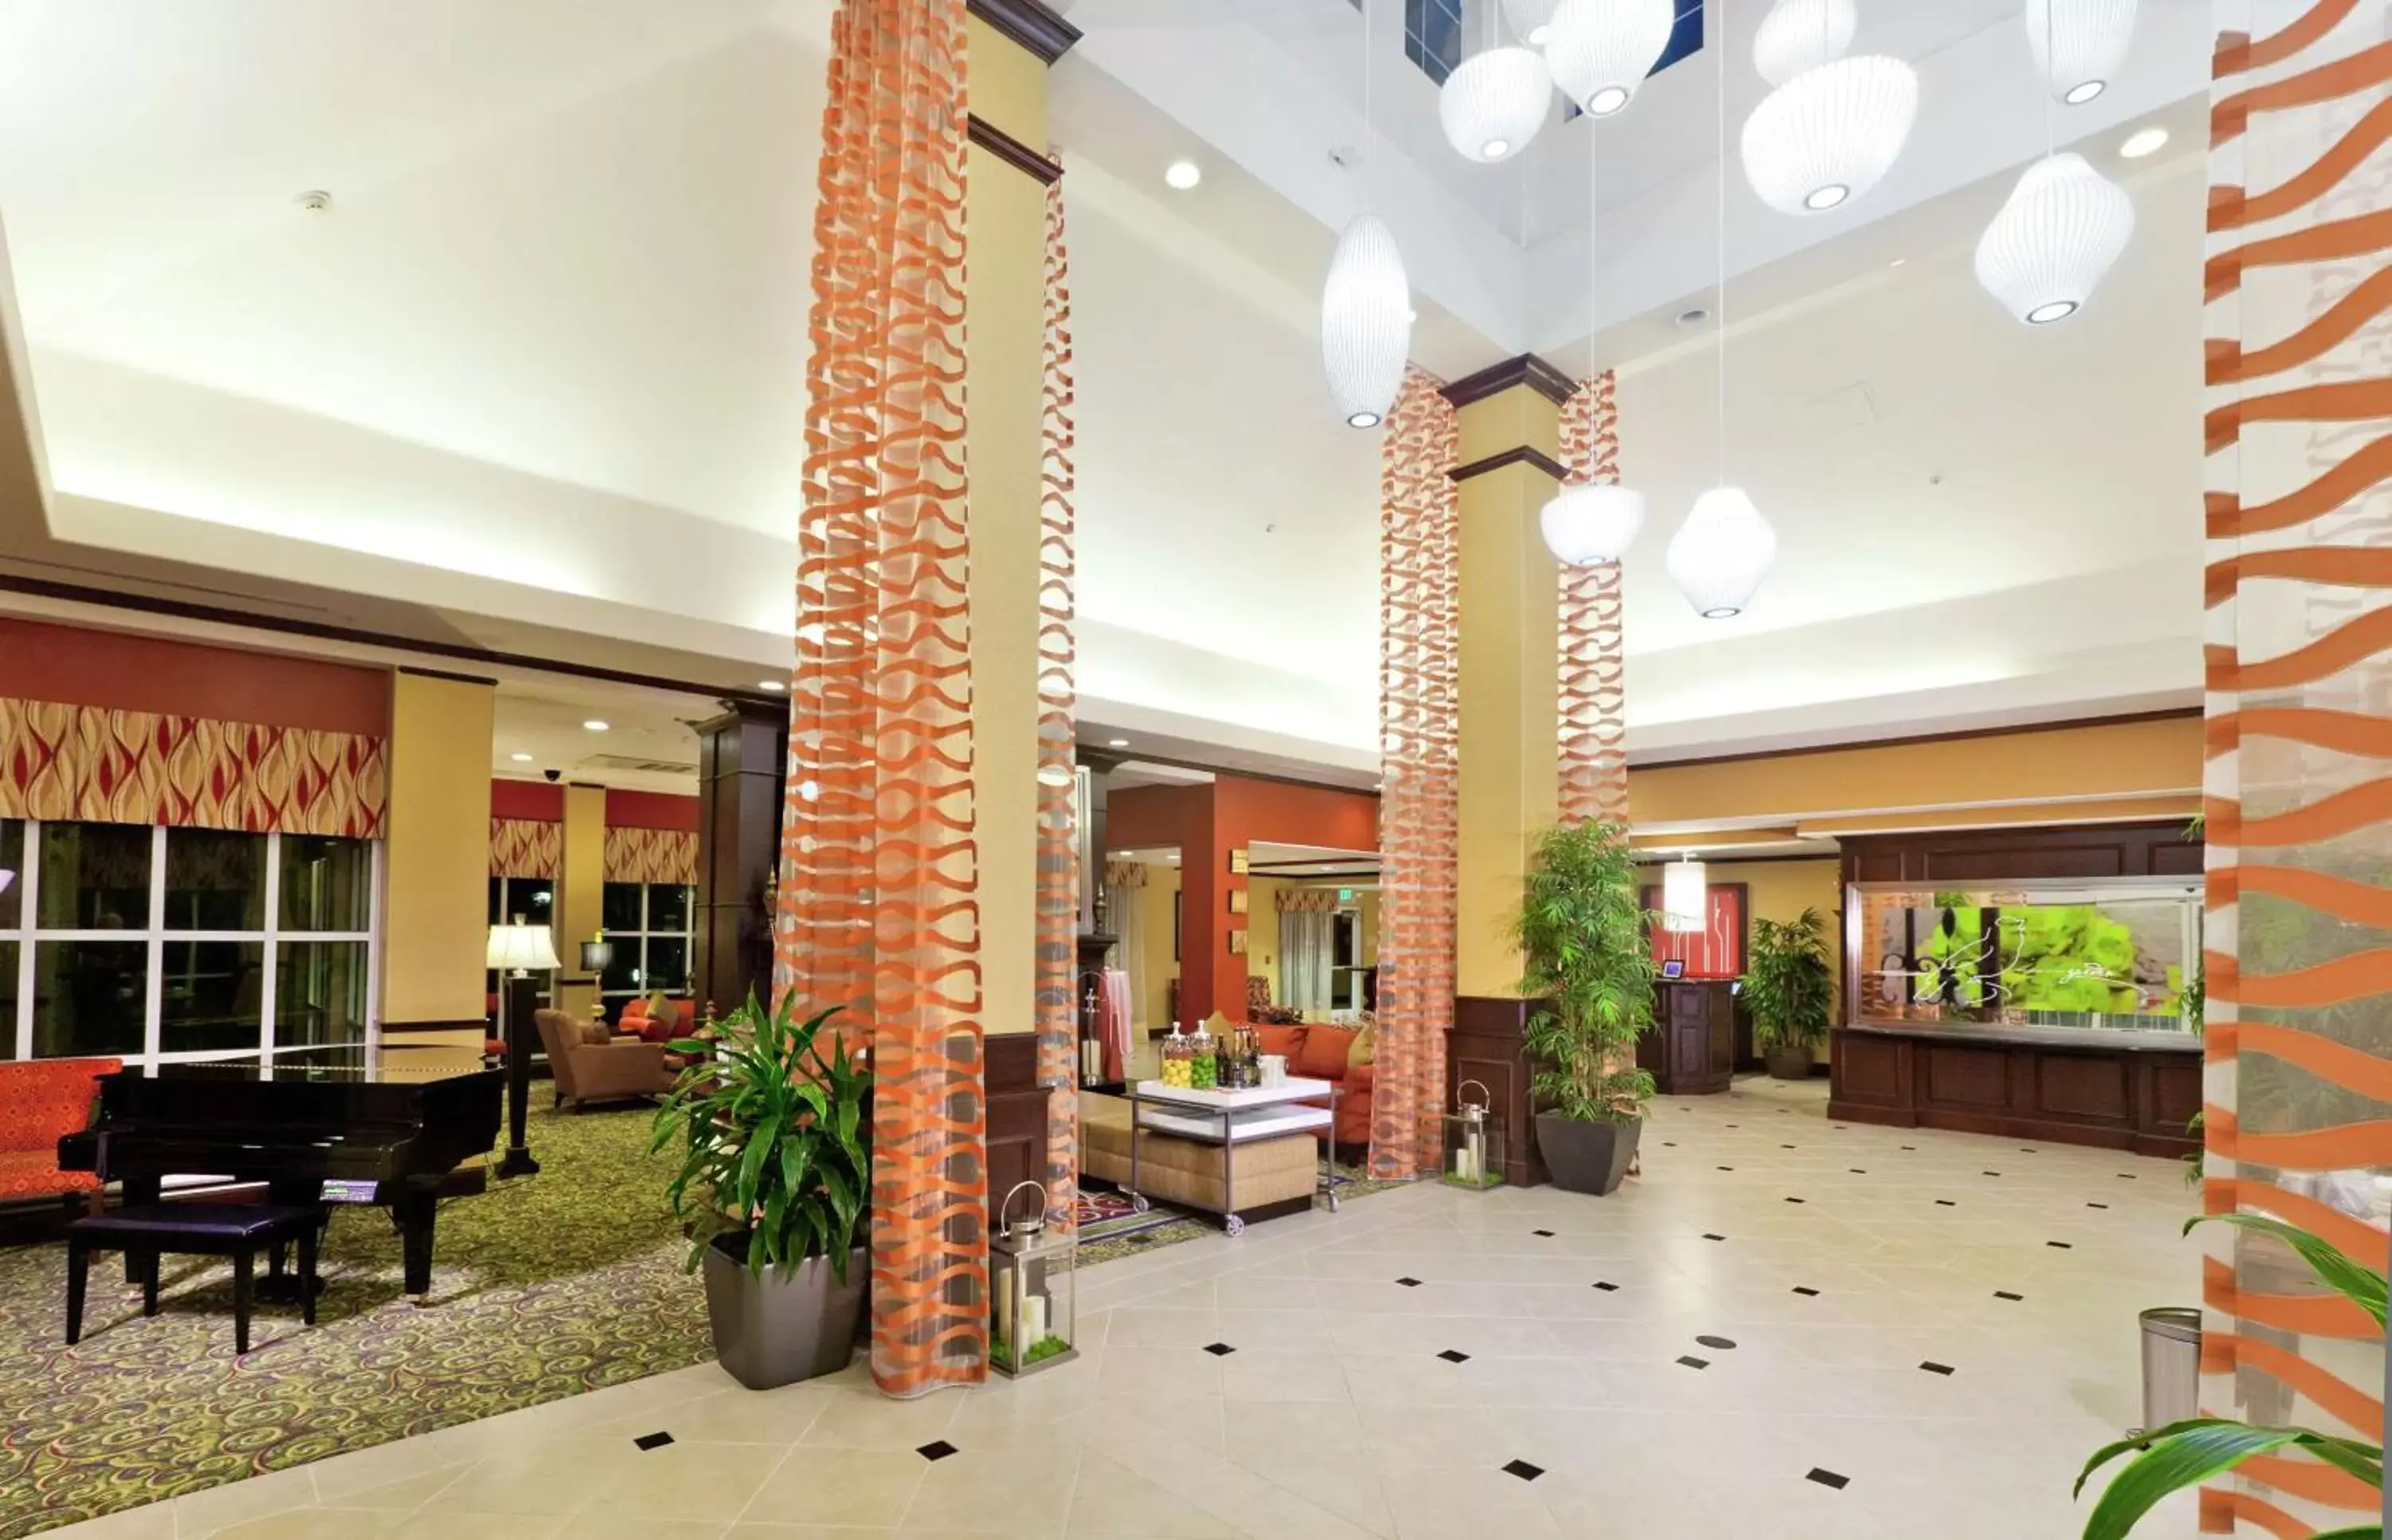 Lobby or reception, Lobby/Reception in Hilton Garden Inn Fontana